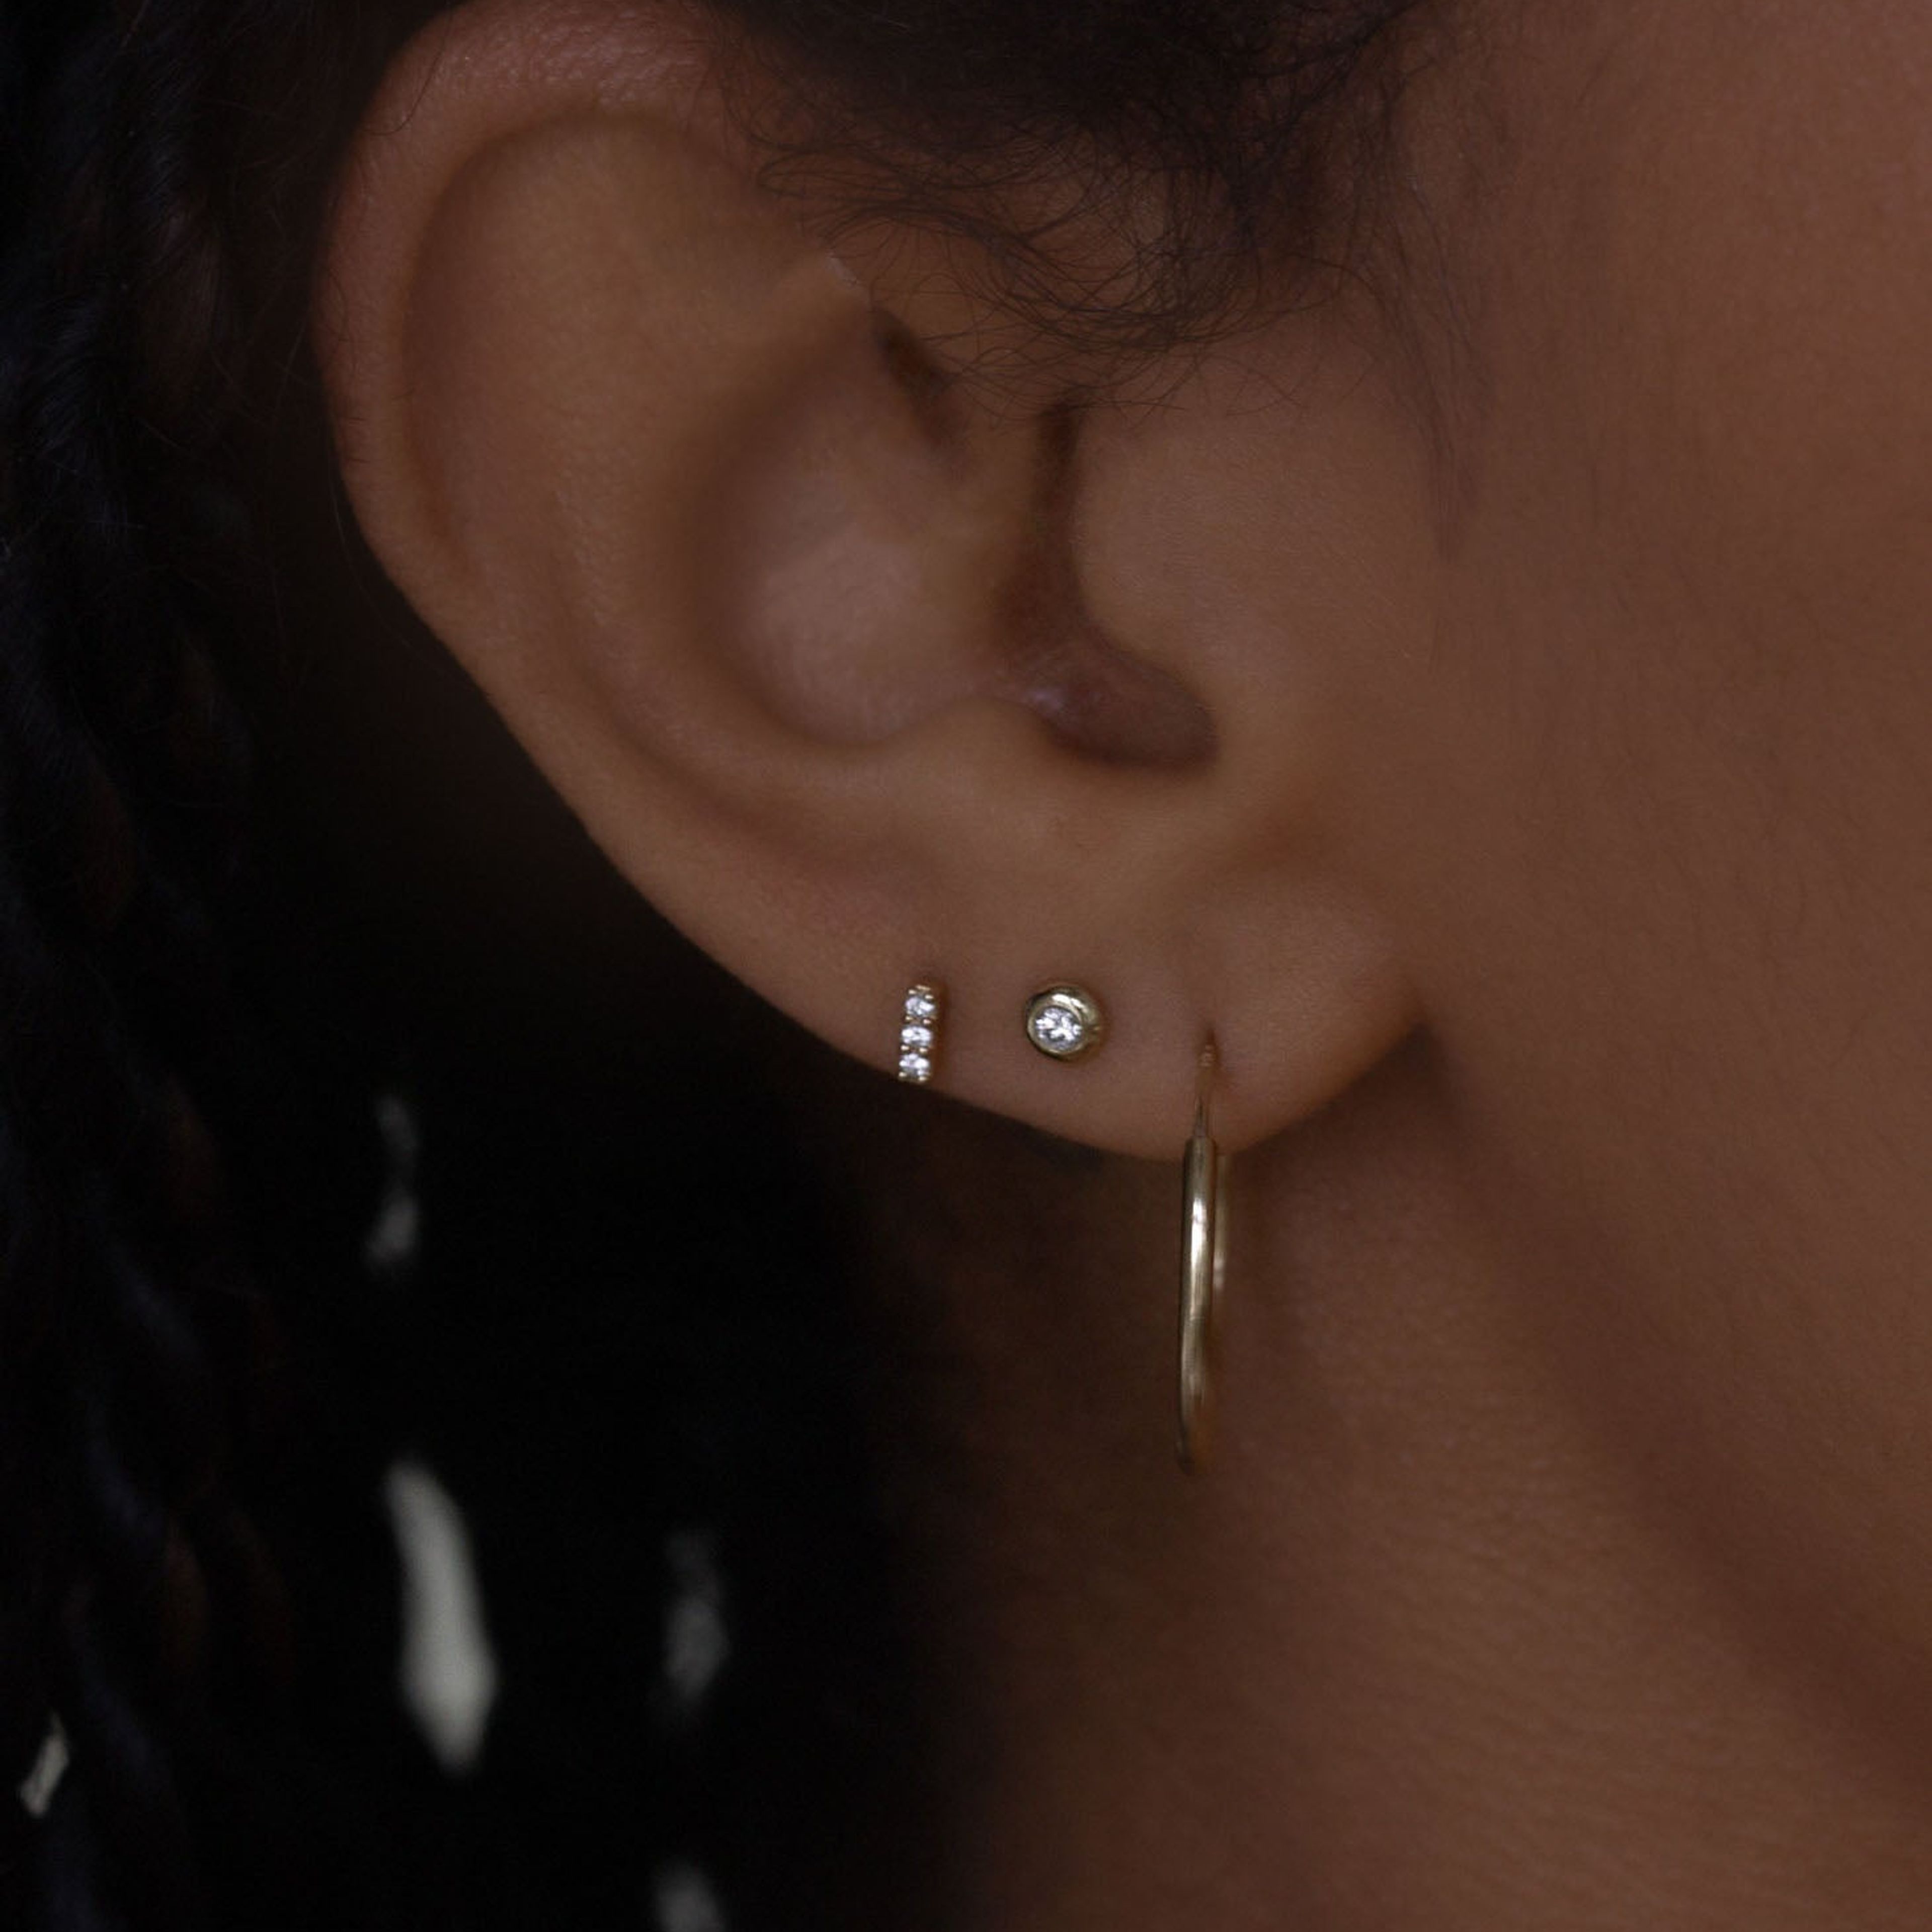 Olivia Round Diamond Stud Earrings